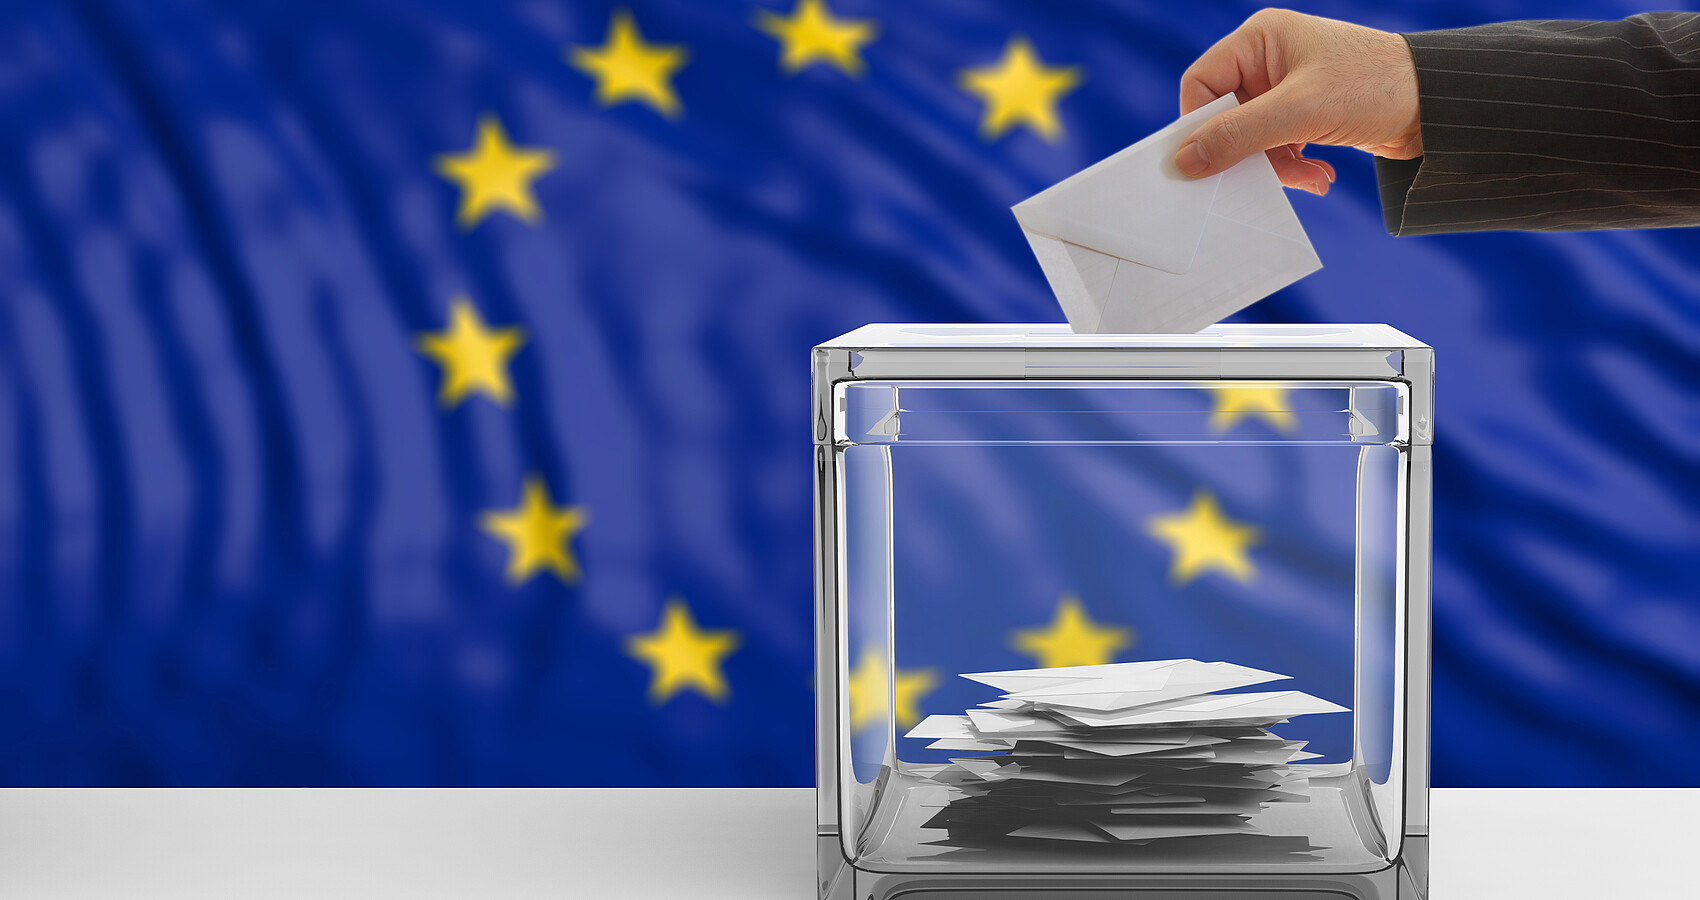 Im Hintergrund blaue EU Flagge mit den 12 gelben Sternen, im Vordergrund steht eine durchsichtige Wahlurne, in die ein verschlossener Wahlumschlag eingeworfen wird.